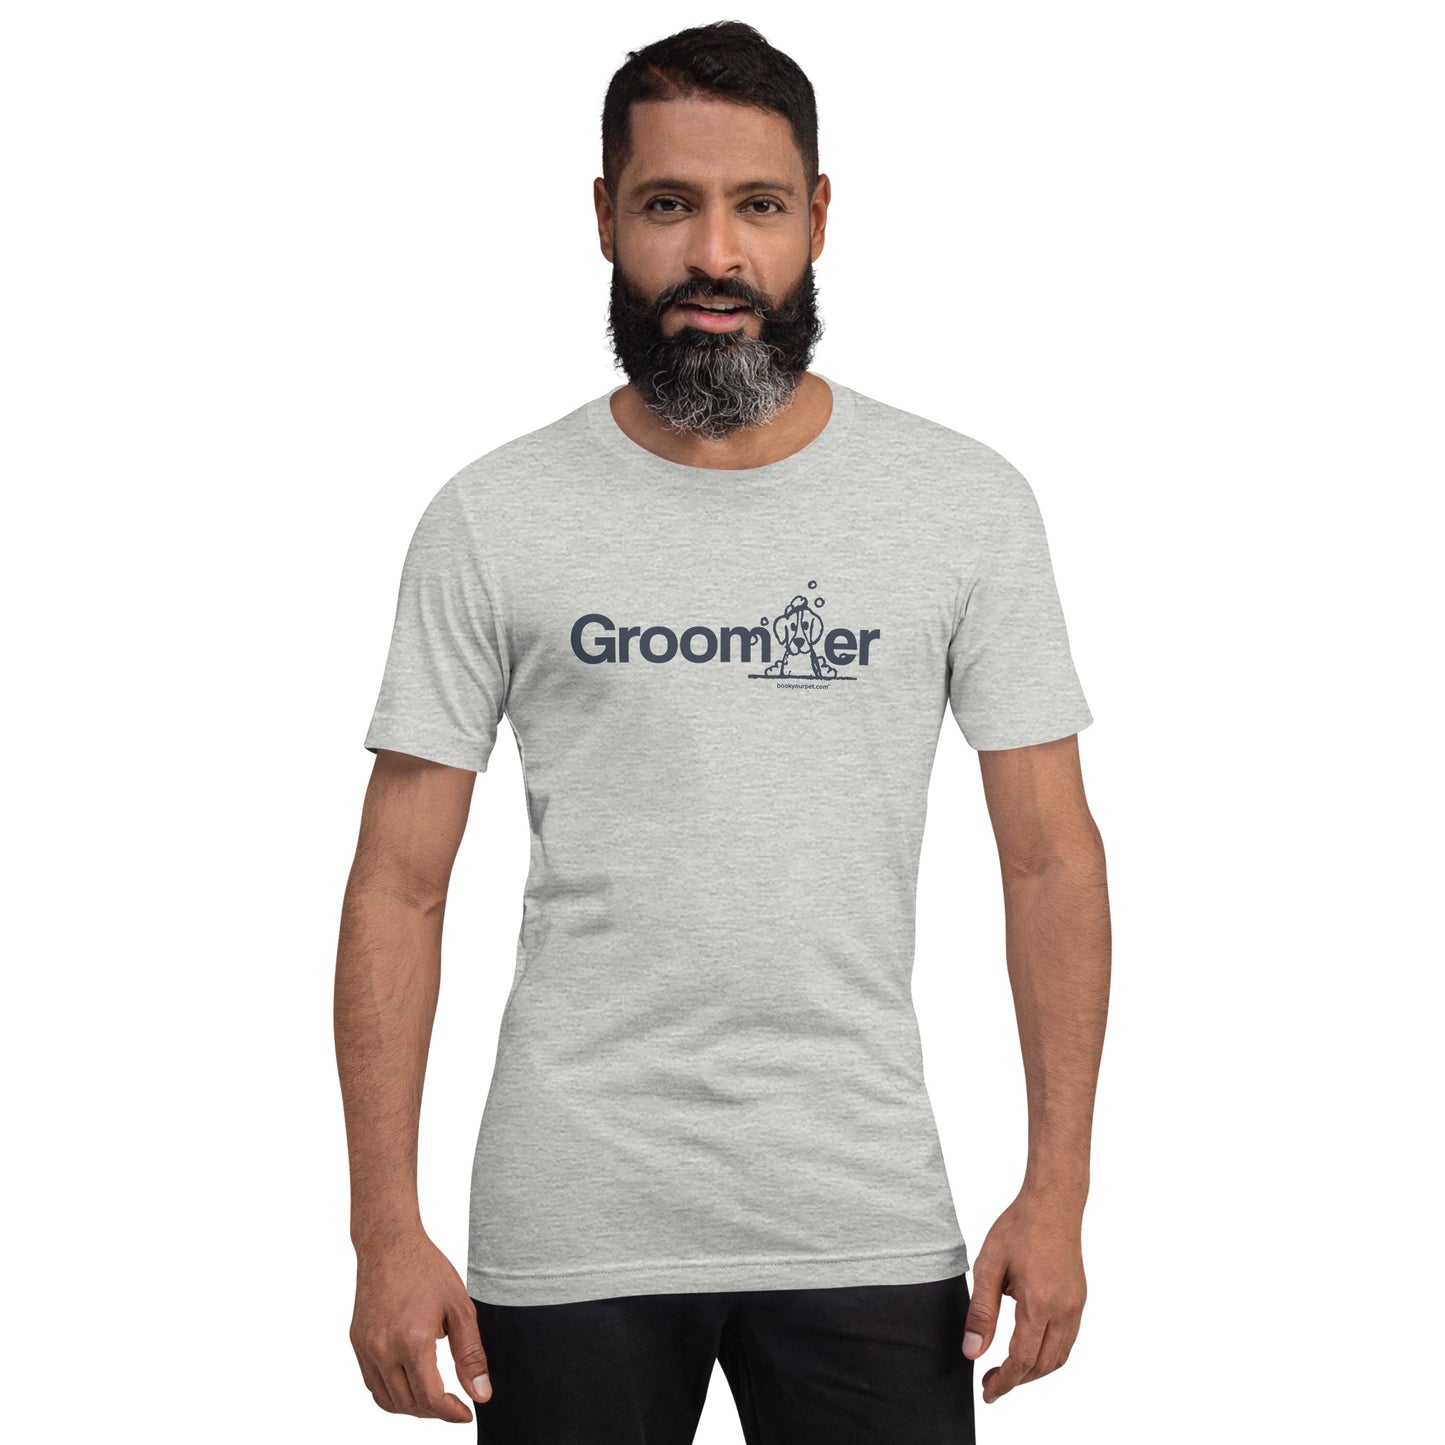 Unisex Groomer t-shirt